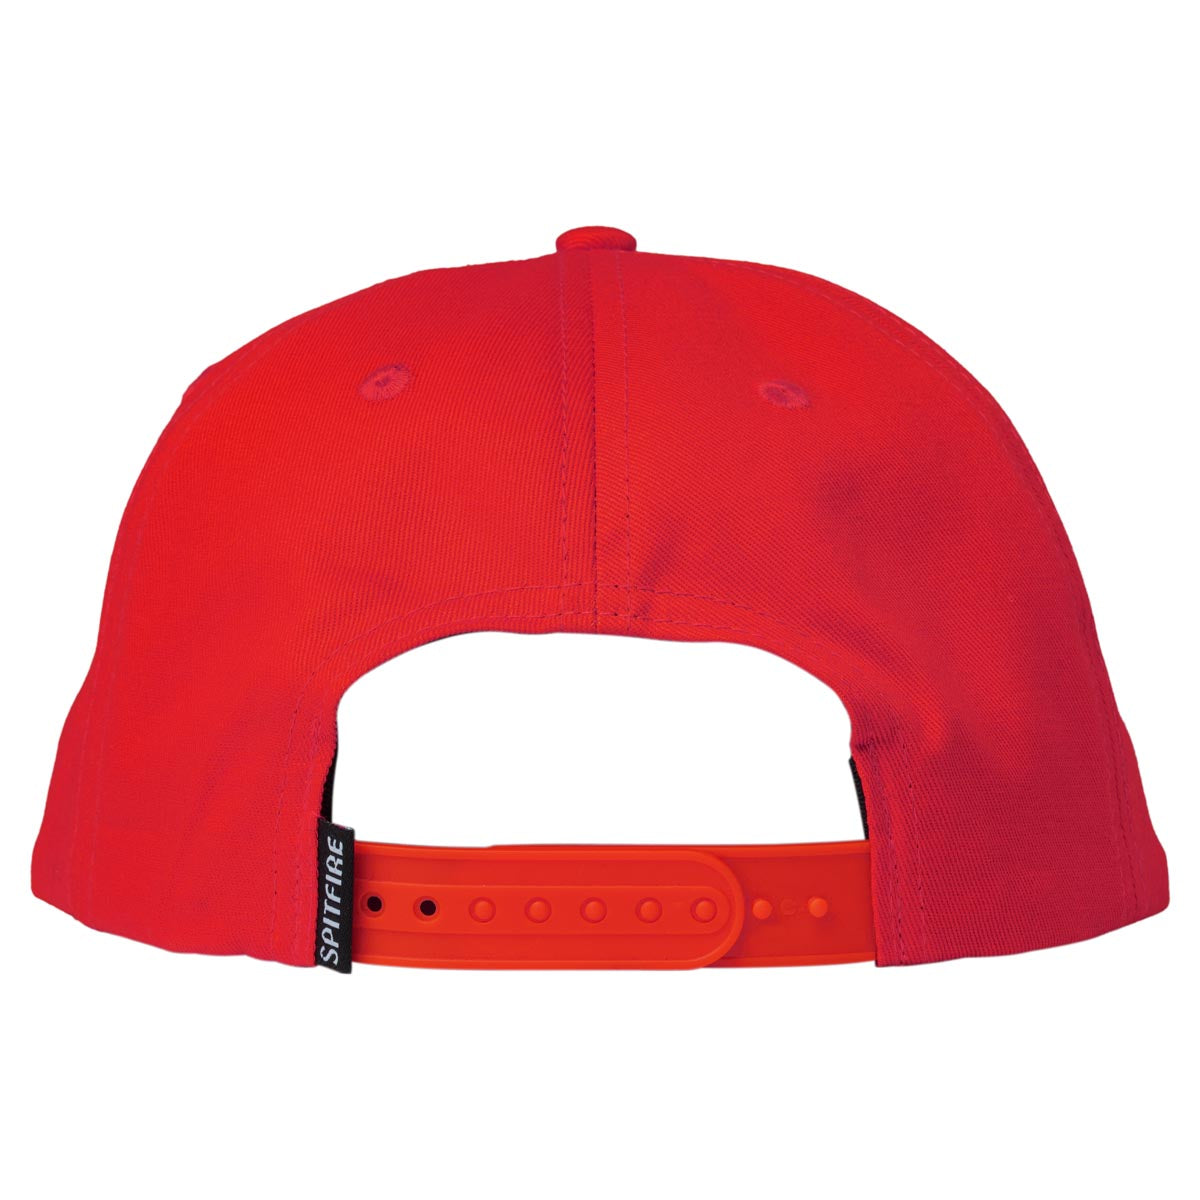 Spitfire Bighead Snapback Hat - Red/Black image 2